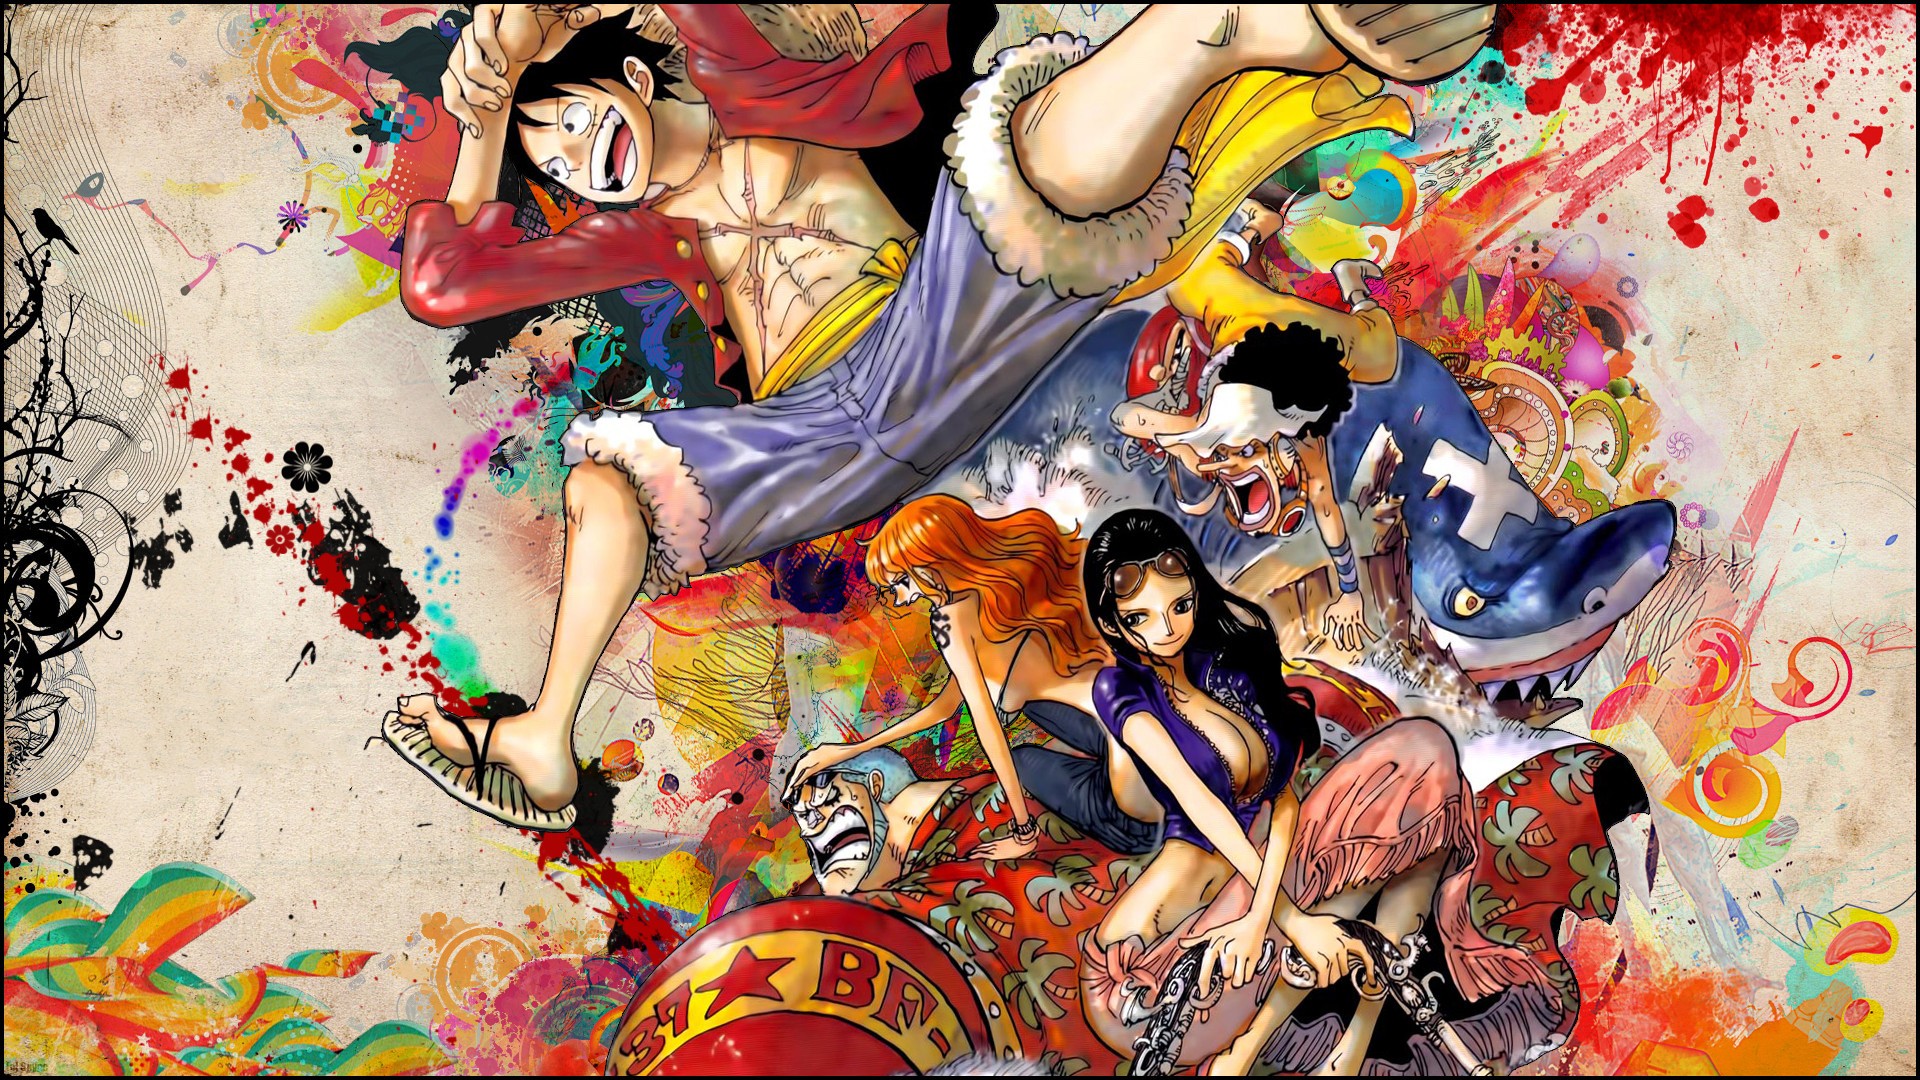 Monkey D. Luffy - nhân vật chính của bộ truyện One Piece, với tính cách vui nhộn và nghị lực phi thường. Hãy xem những hình ảnh đẹp và đầy cảm hứng về Luffy để truyền động lực cho chính mình!